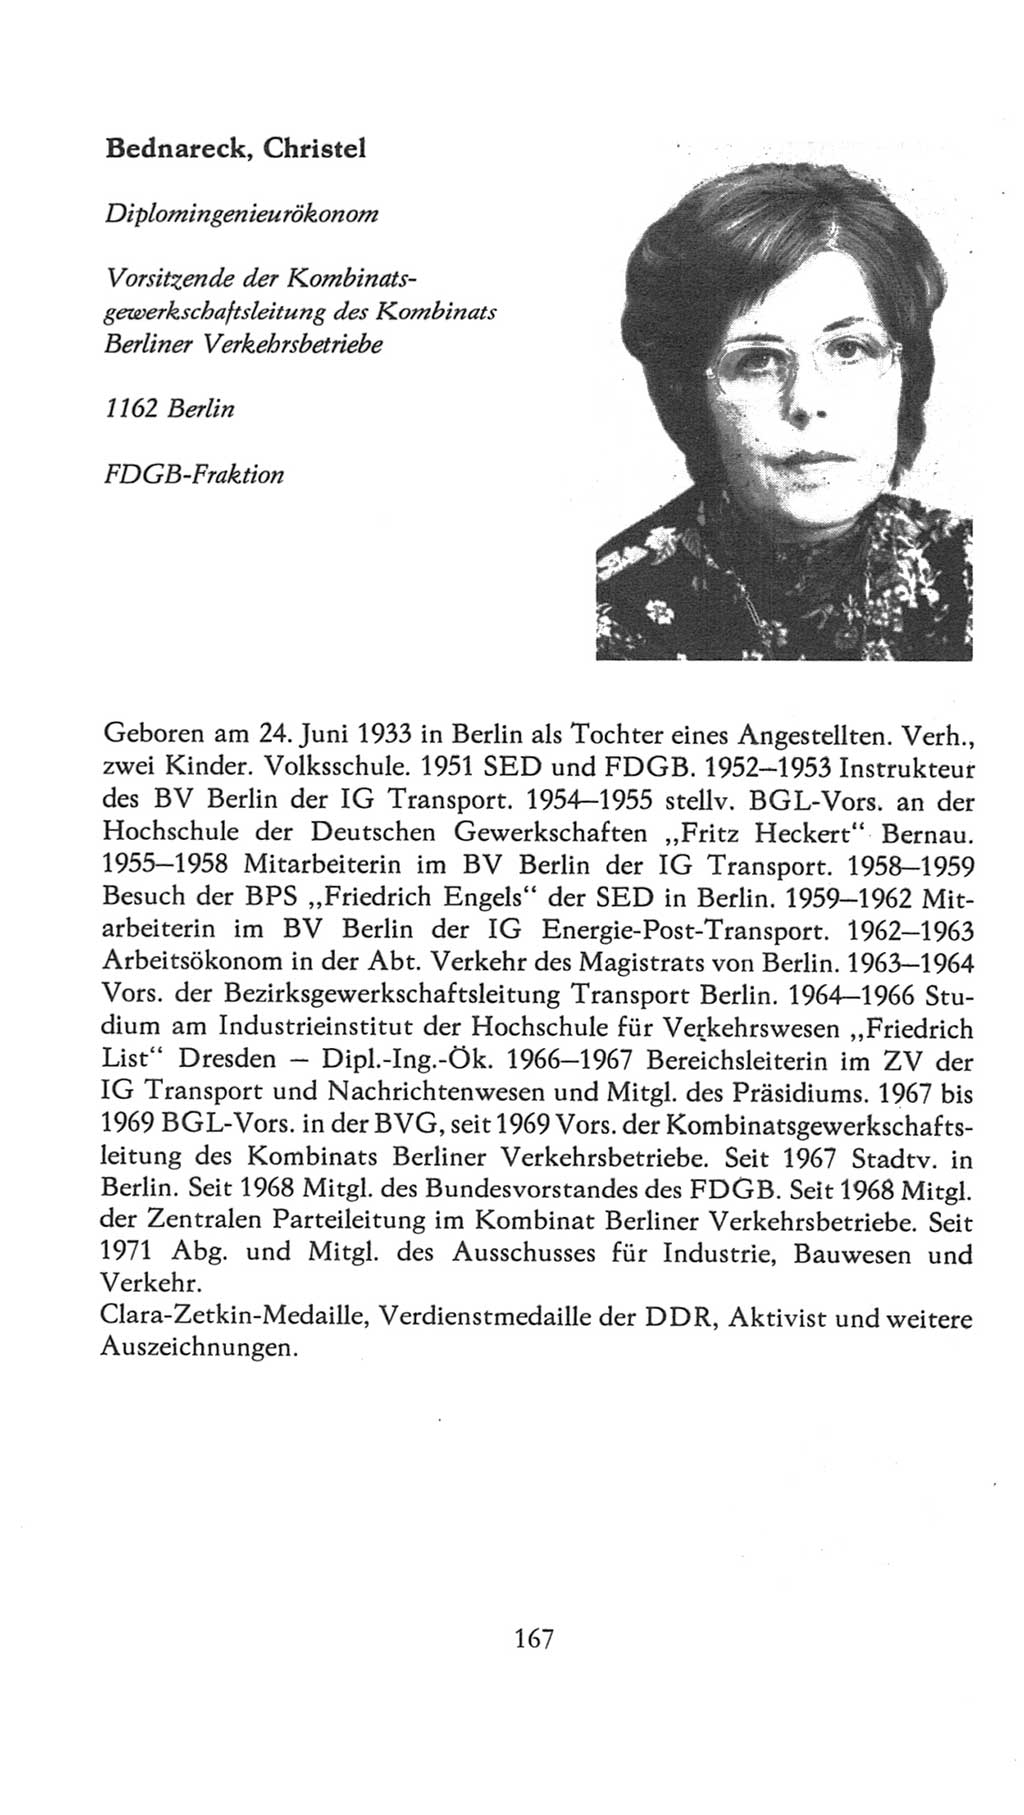 Volkskammer (VK) der Deutschen Demokratischen Republik (DDR), 7. Wahlperiode 1976-1981, Seite 167 (VK. DDR 7. WP. 1976-1981, S. 167)